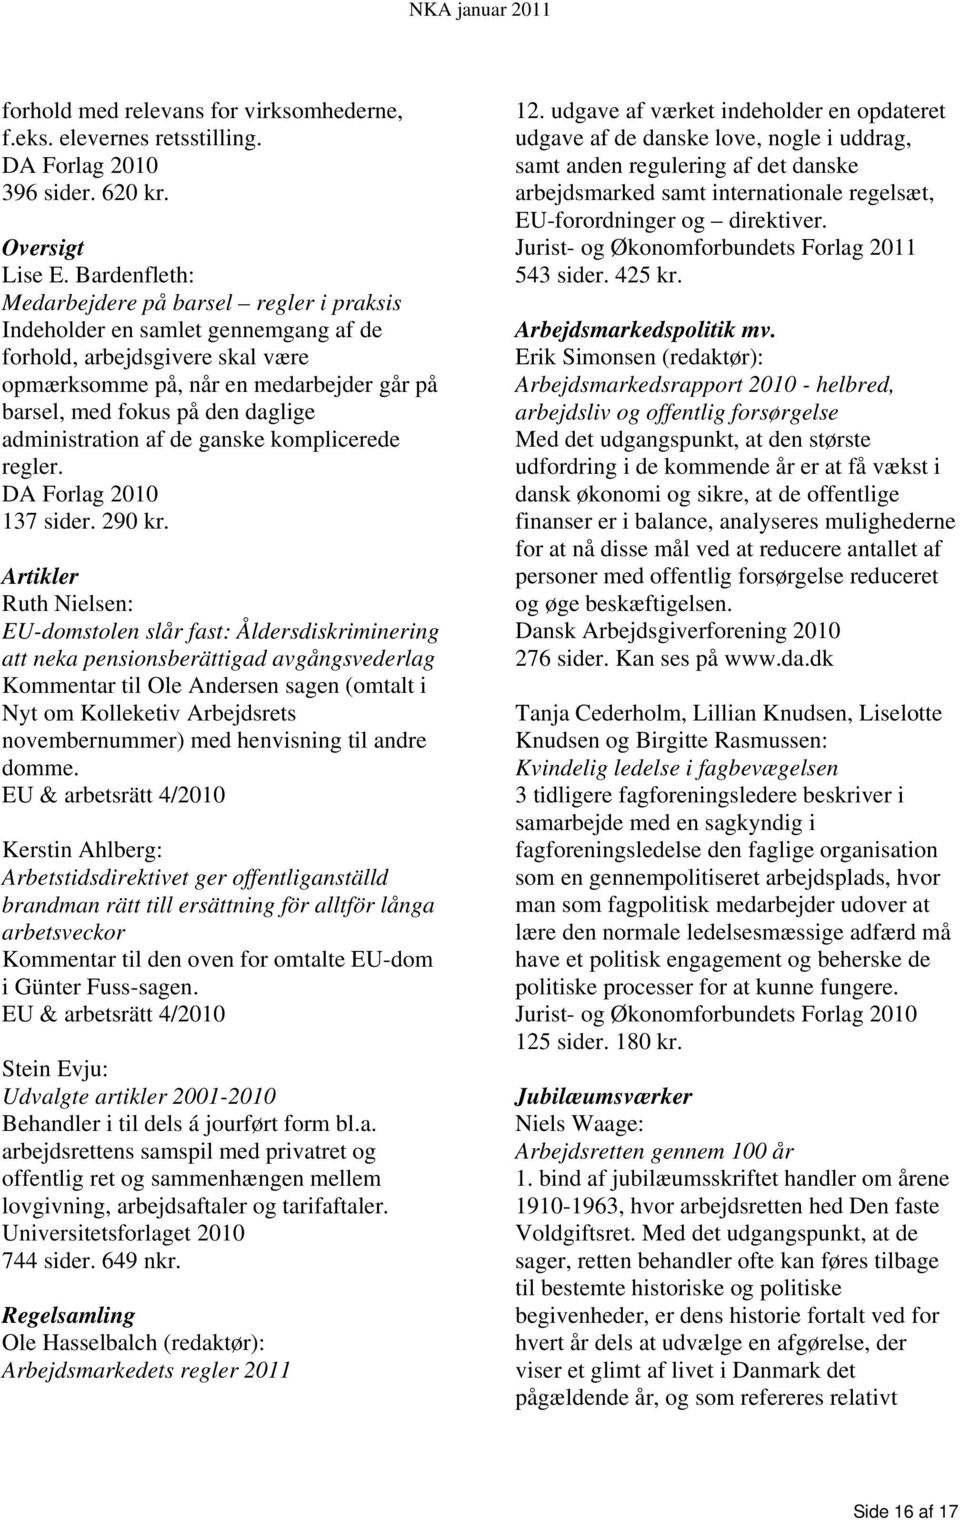 administration af de ganske komplicerede regler. DA Forlag 2010 137 sider. 290 kr.